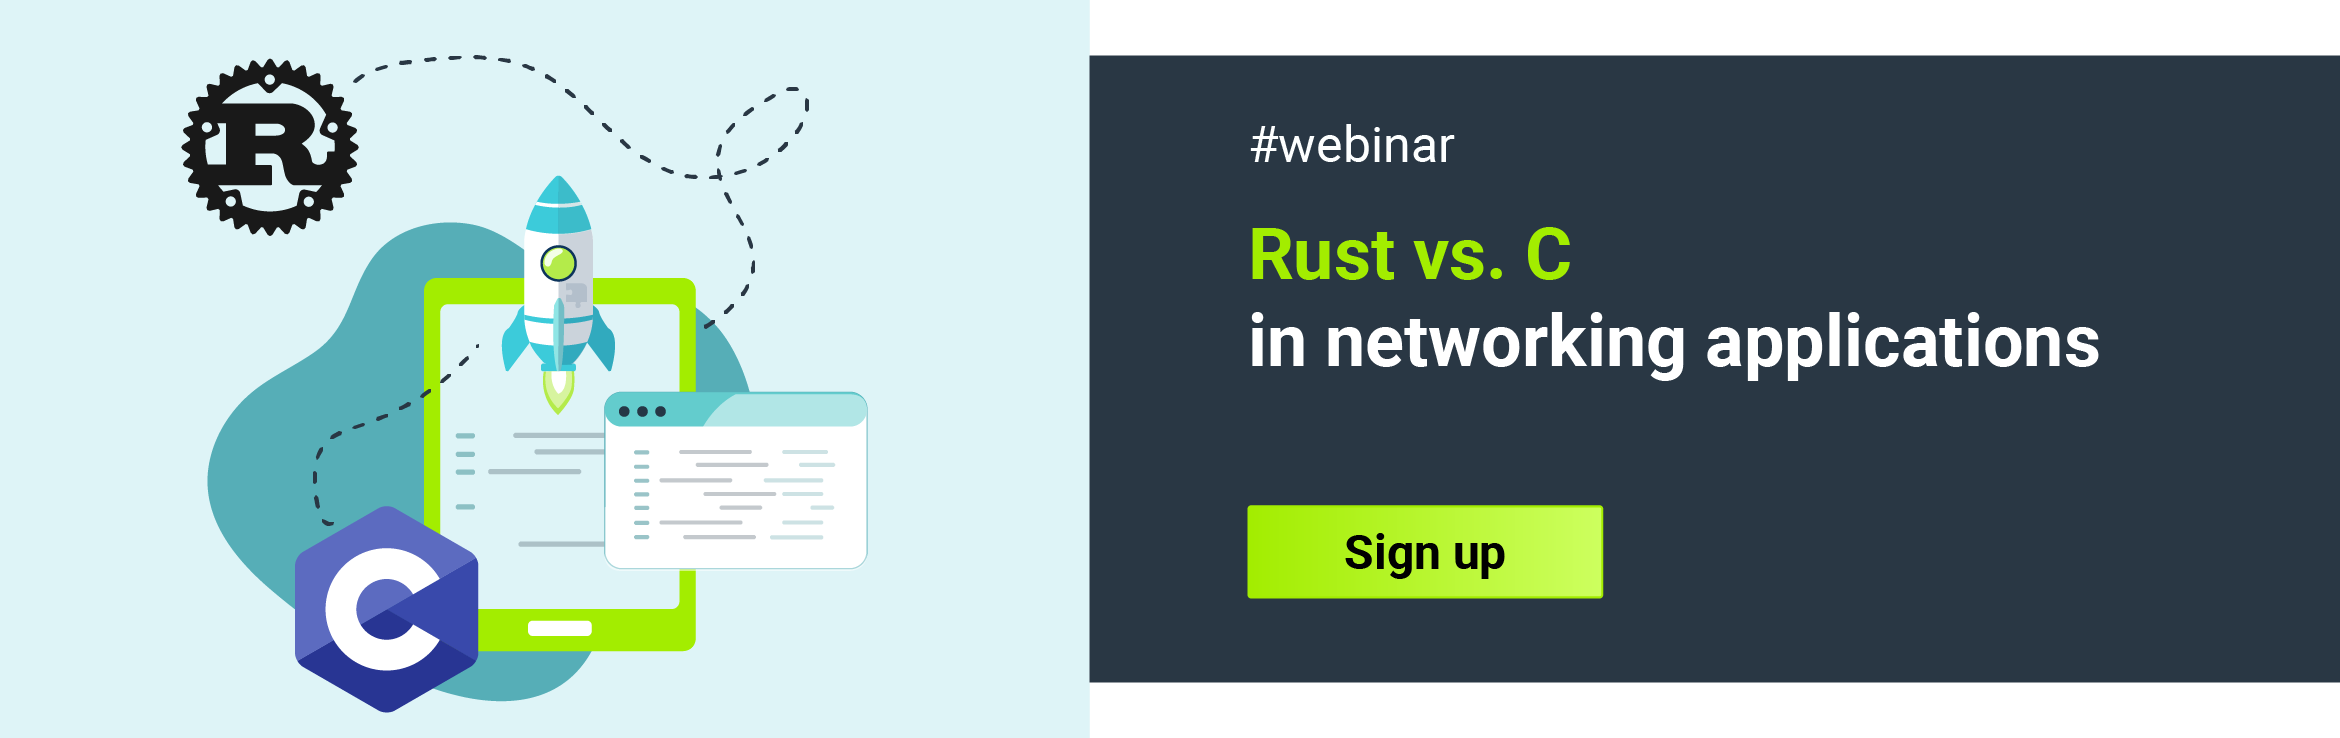 Rust vs. C webinar